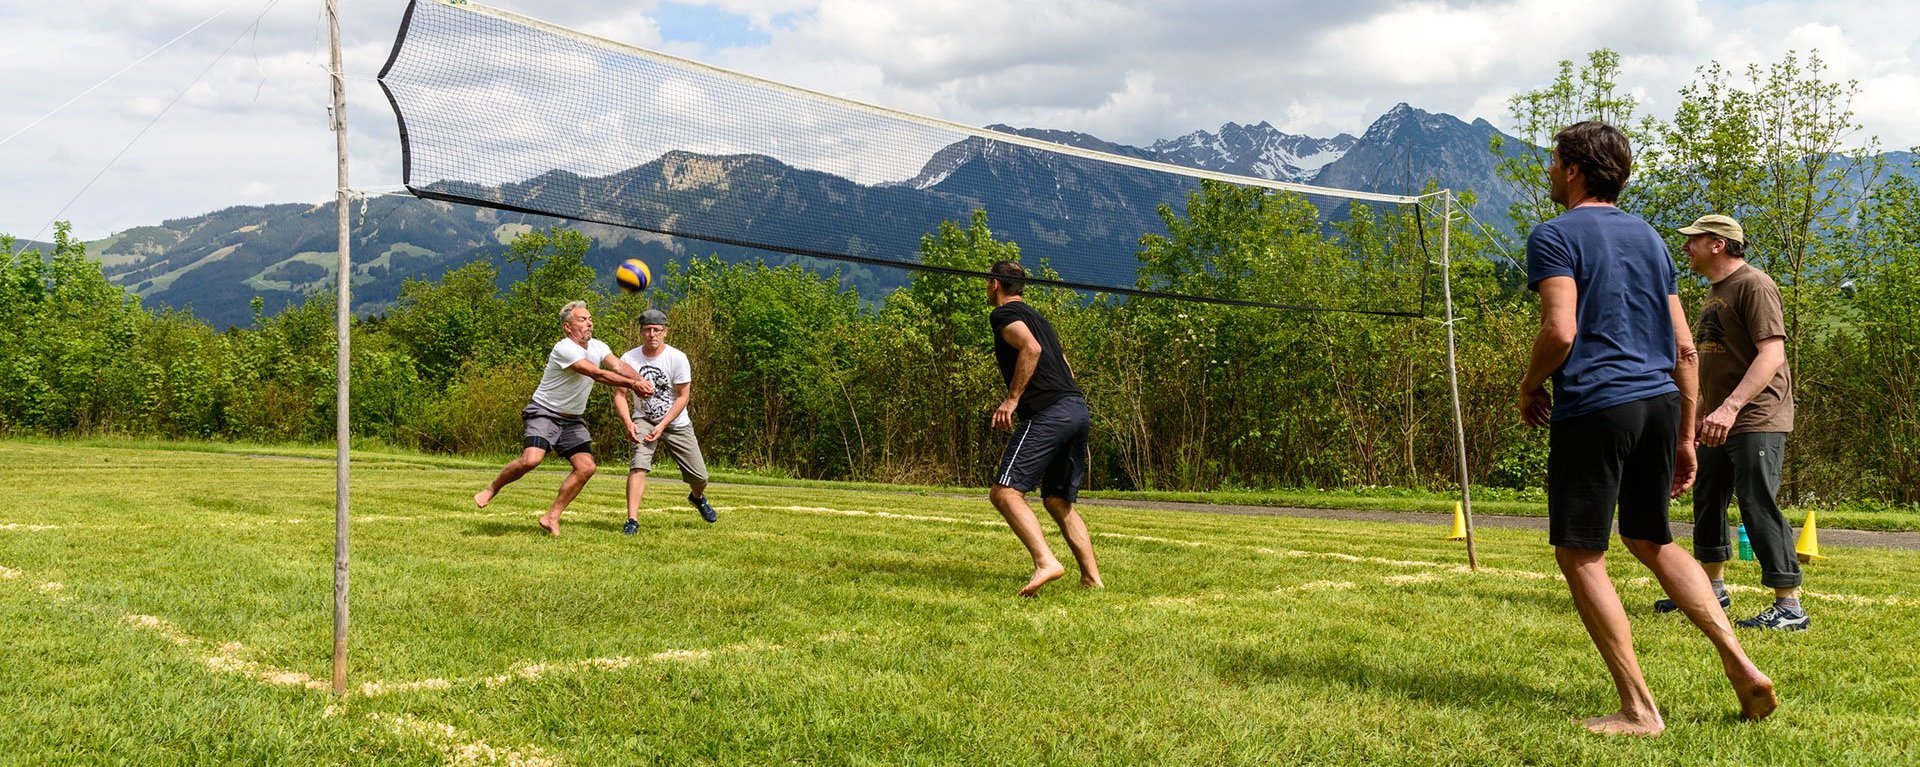 Volleyball auf der Wiese - am Netz stehen zwei Manschaften